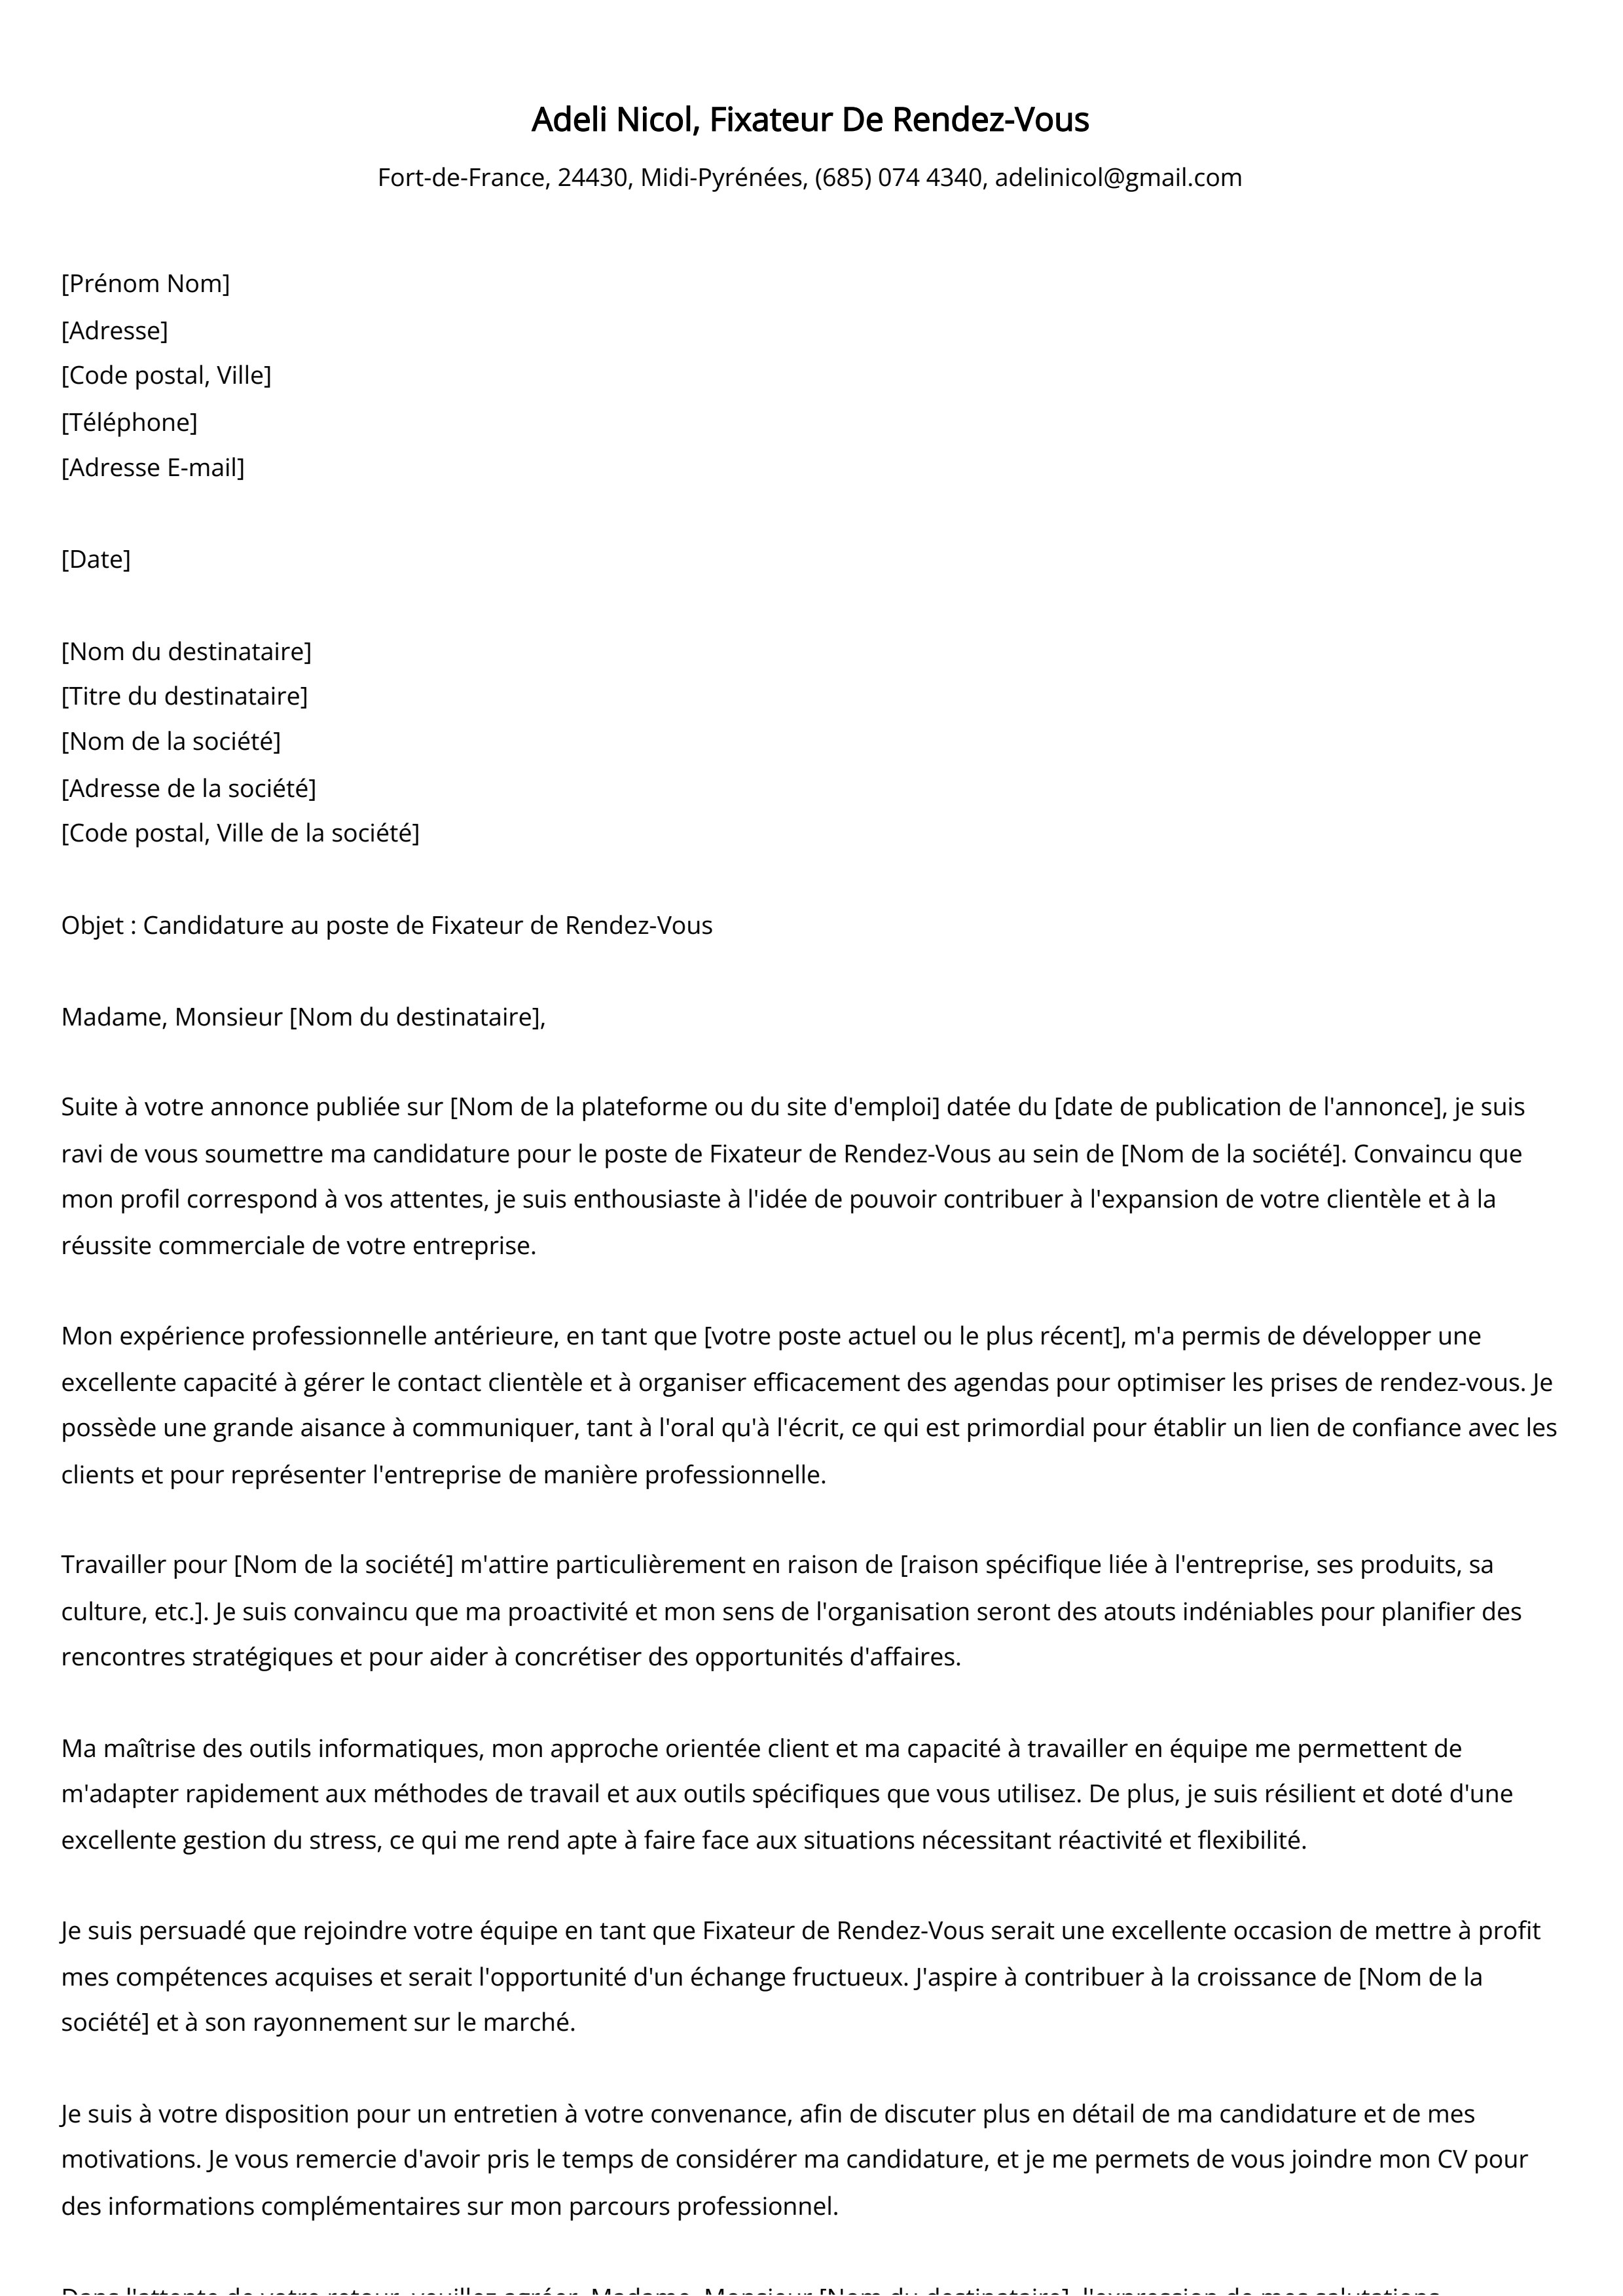 Fixateur De Rendez-Vous Cover Letter Example